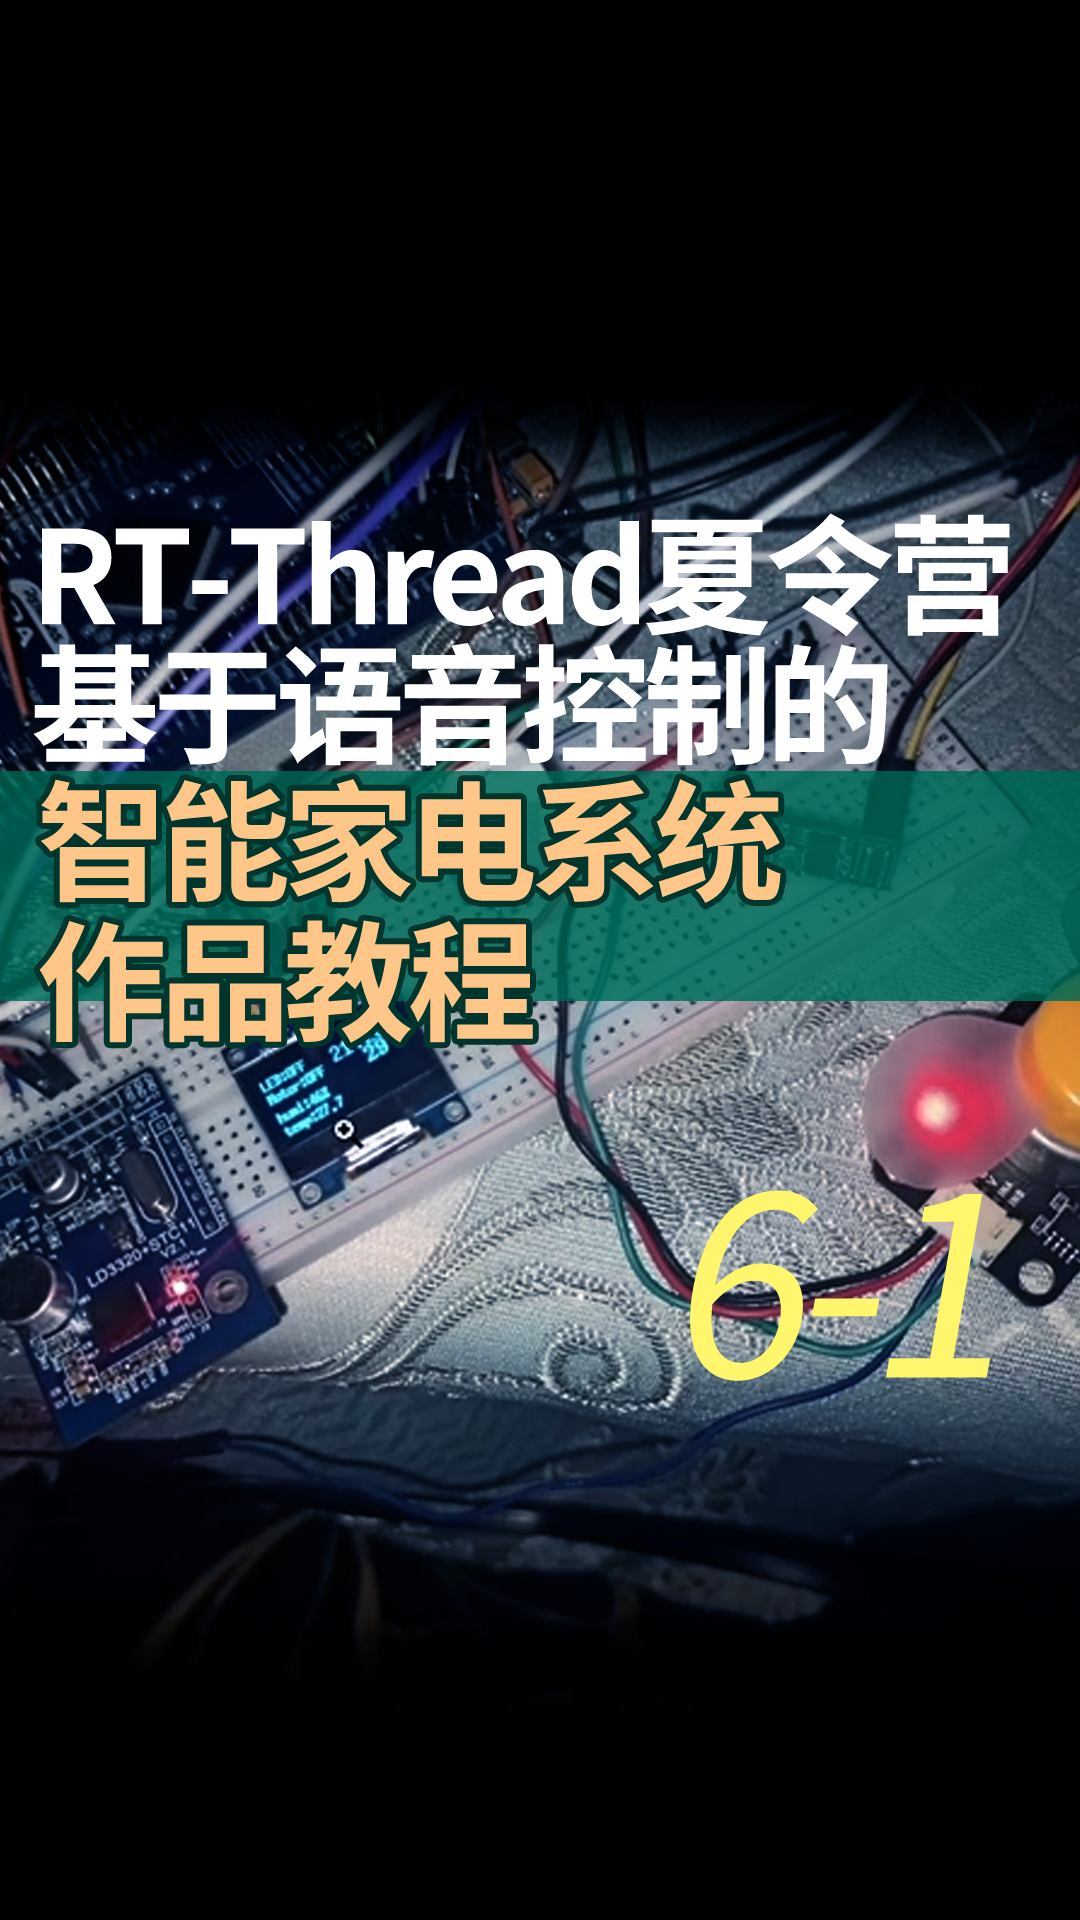 RT-Thread夏令营基于语音控制的智能家电系统作品教程 6-1程序完善